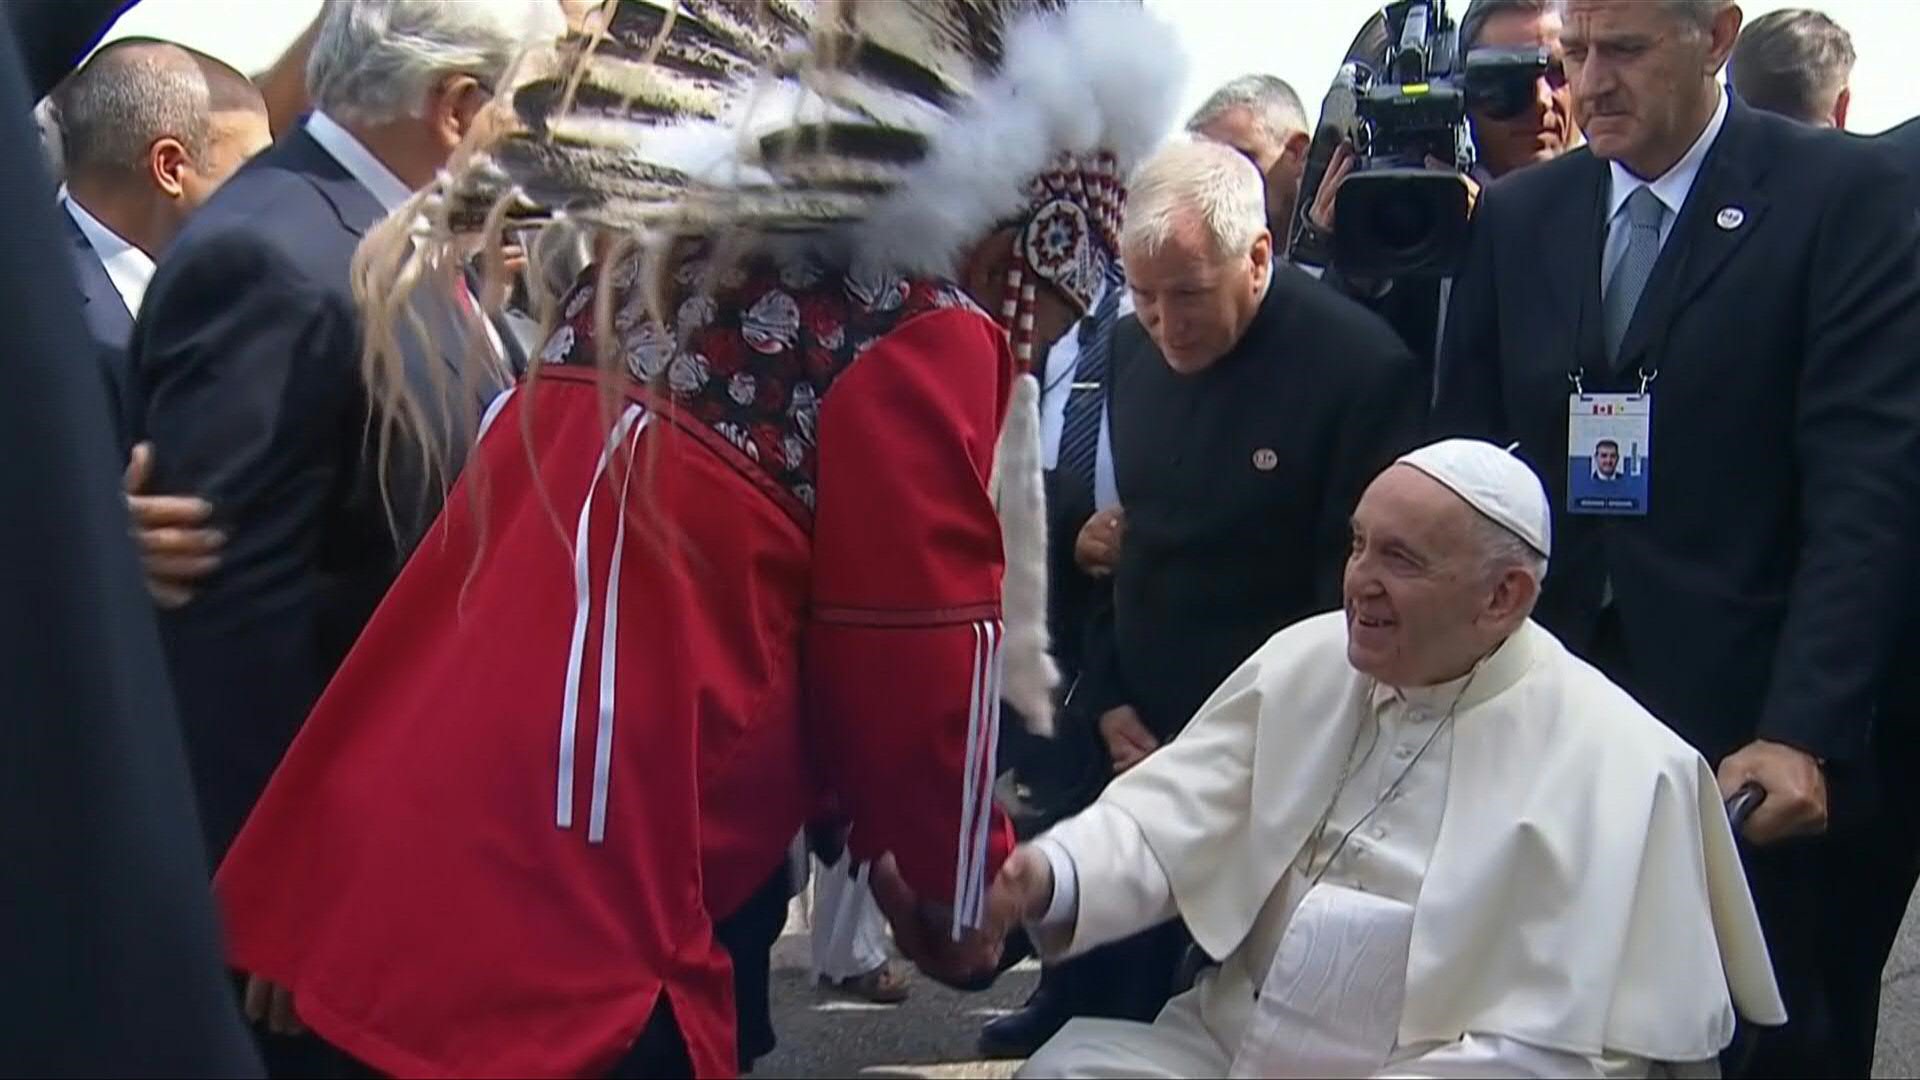 El papa Francisco llegó el domingo a Canadá para una "peregrinación penitencial" durante la cual pediría perdón a los indígenas sobrevivientes de abusos cometidos en escuelas residenciales dirigidas por la Iglesia Católica.